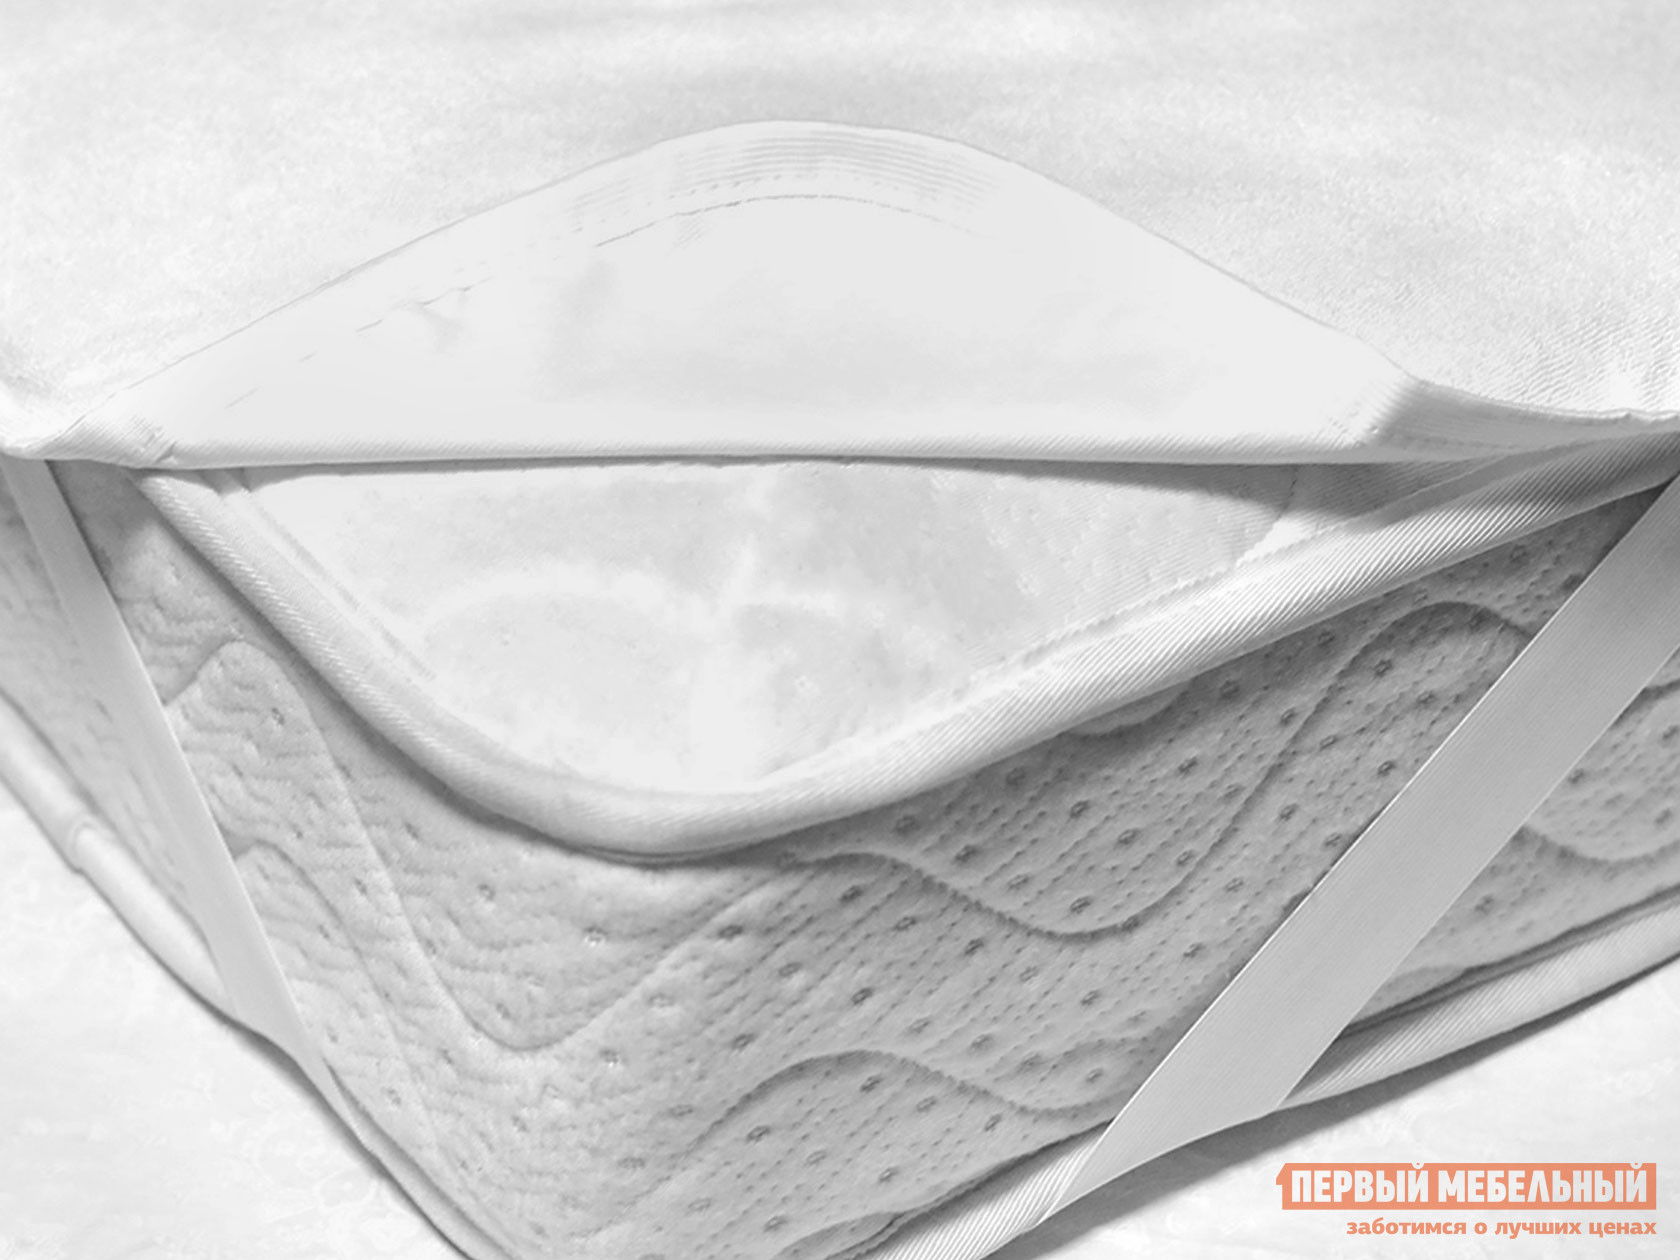 Чехол для матраса  Фулл протекшн на резинке Белый махровый, 1800 Х 2000 мм от Первый Мебельный